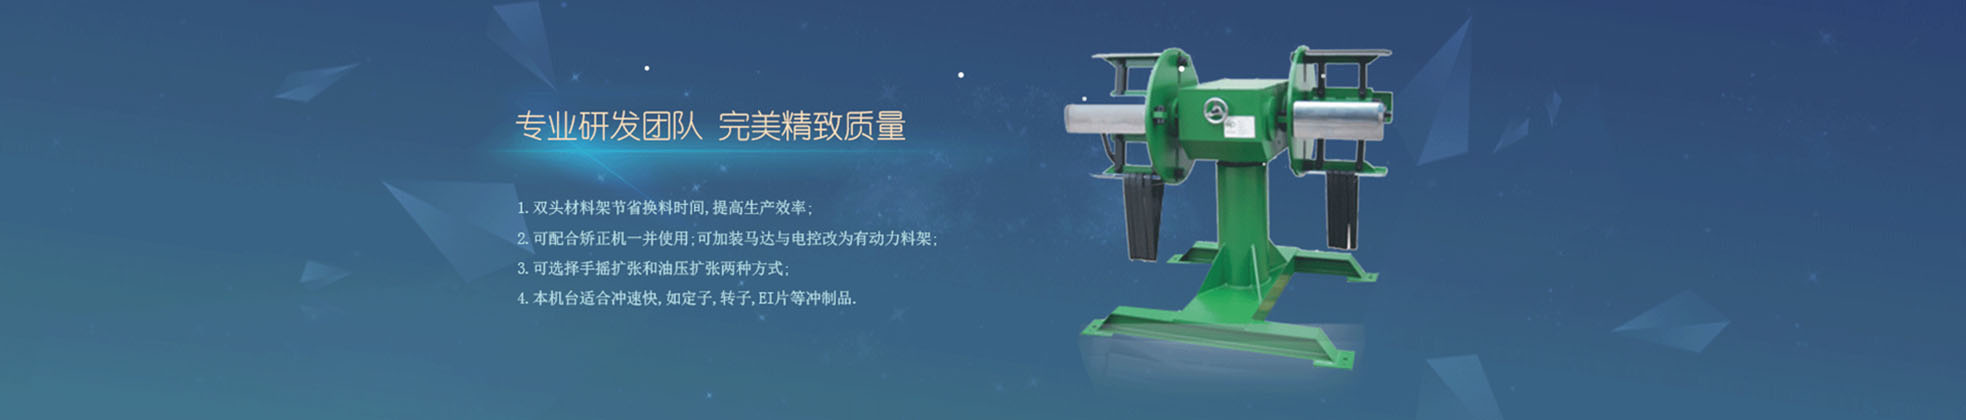 广东瑞辉送料机,整平机,开卷机,材料架,三合一,机械手,自动化